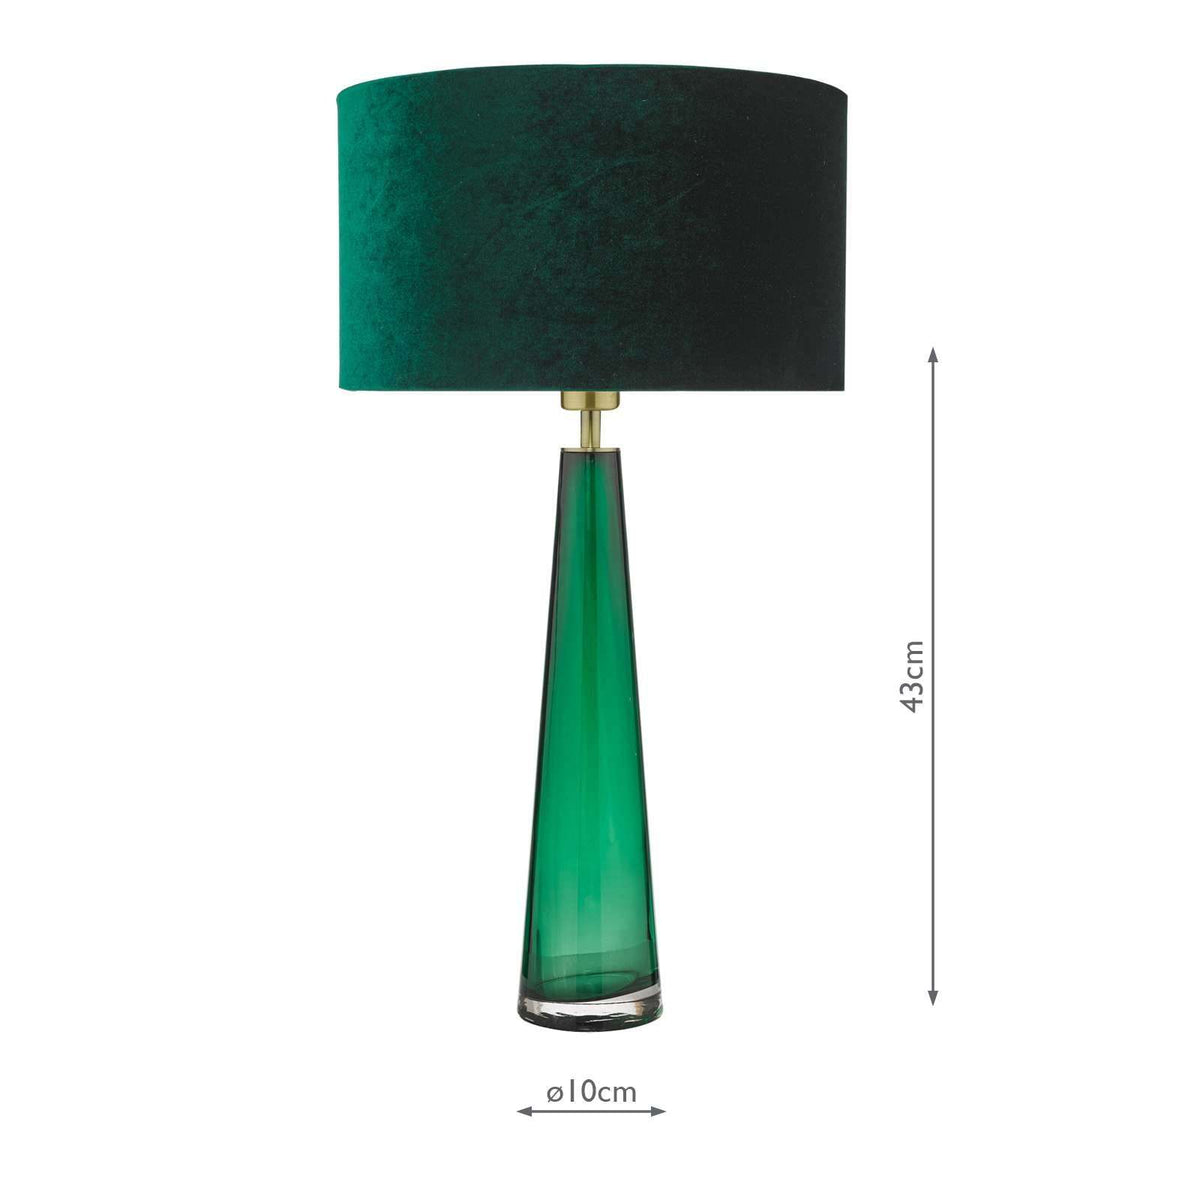 Samara Table Lamp Green Glass Base Only